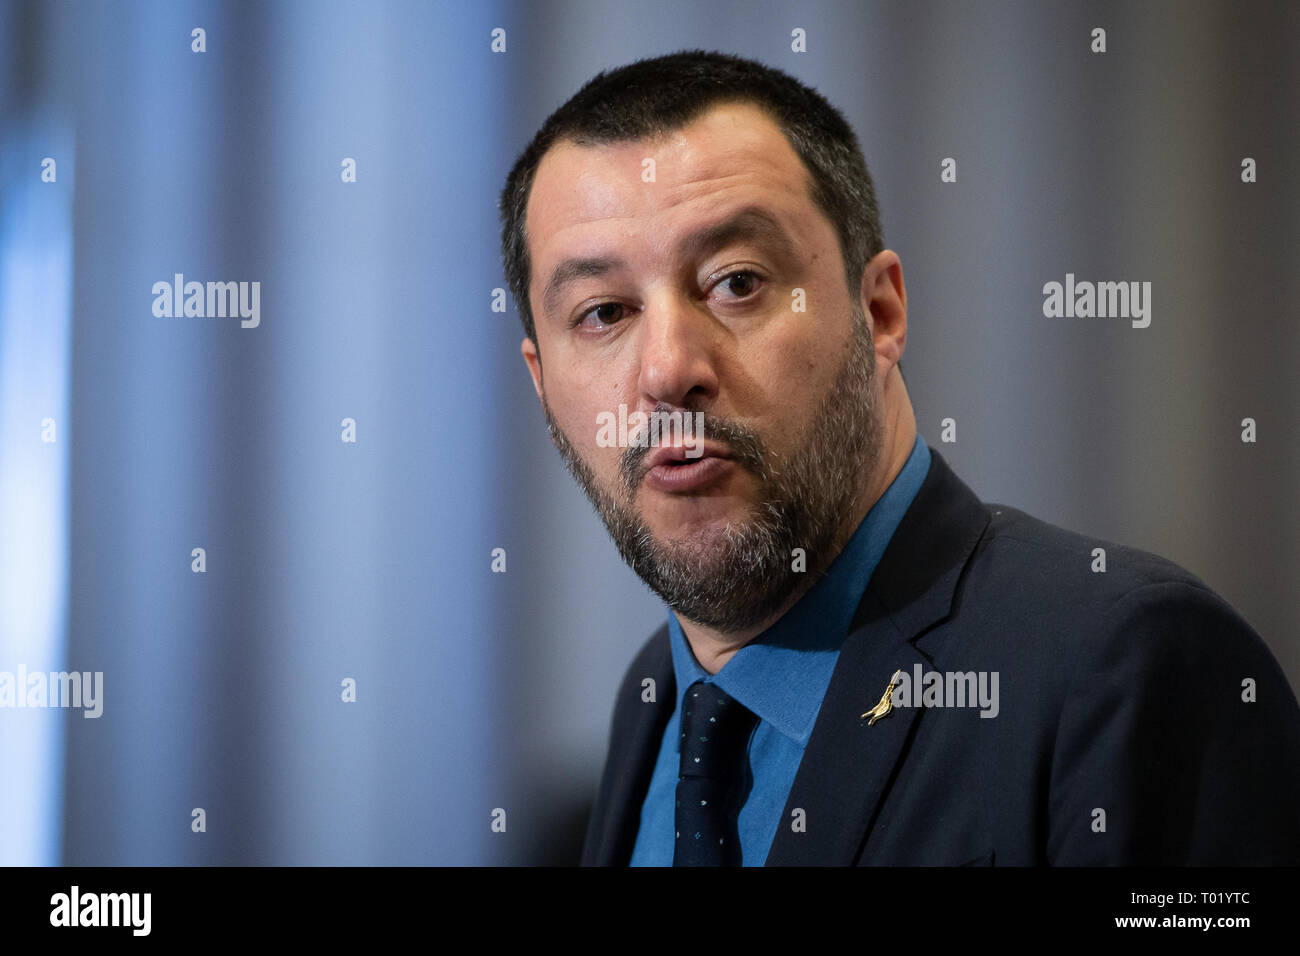 Der stellvertretende Ministerpräsident von Italien Matteo Salvini während der Pressekonferenz mit polnischen Innenminister Joachim Brudzinski im Innenministerium in Warschau, Polen am 9. Januar 2019 Stockfoto